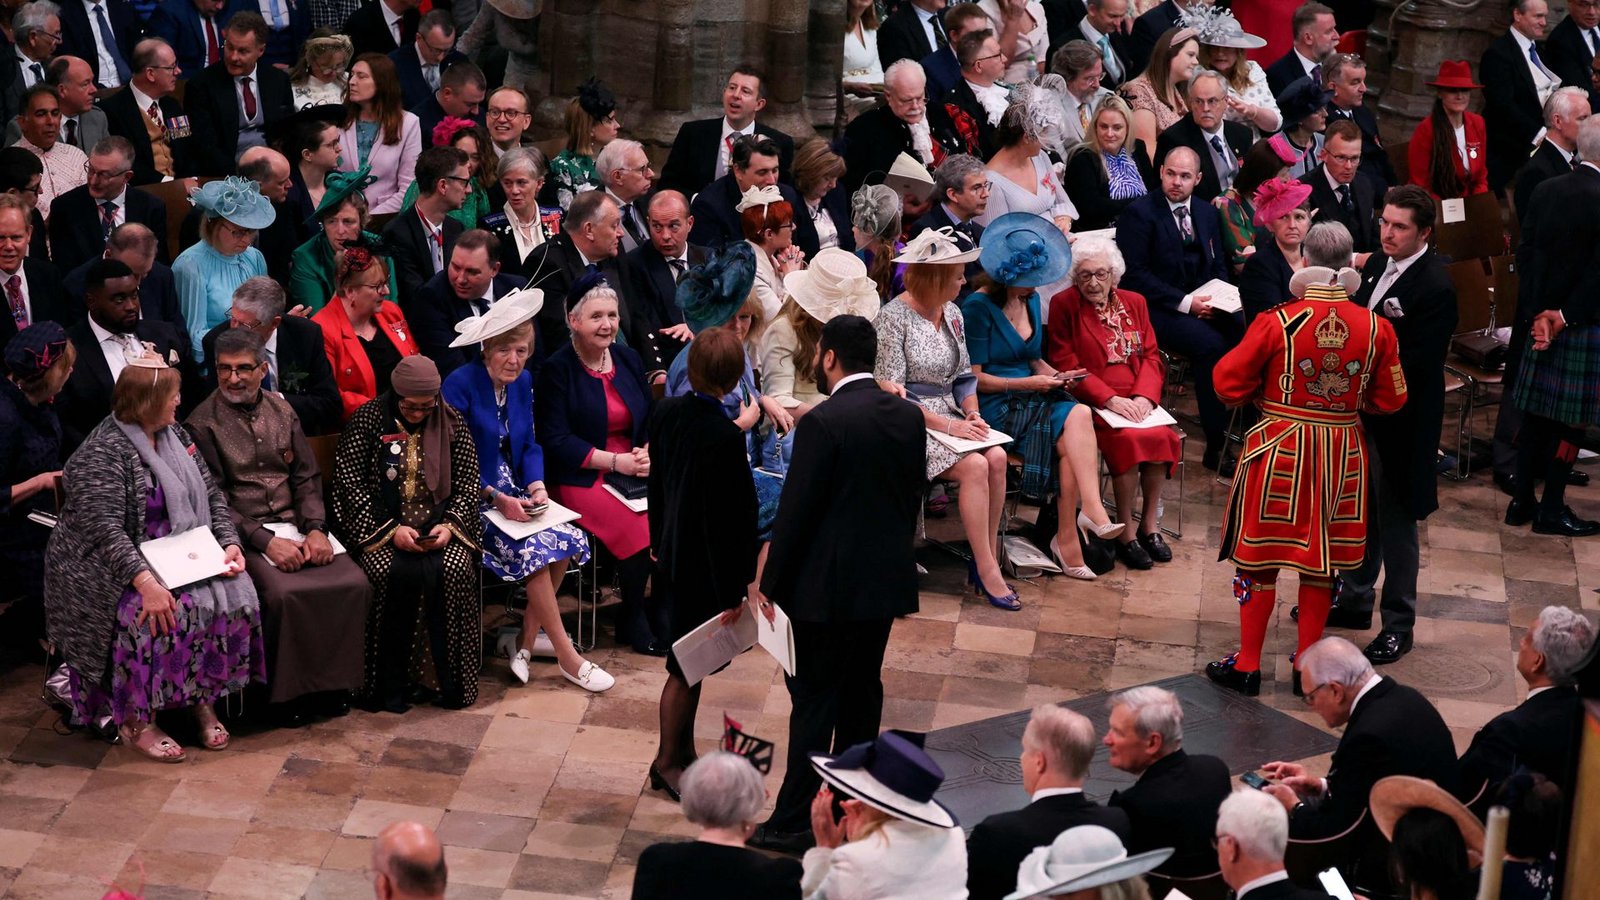 Stunden vor Beginn des Gottesdienstes nehmen die Gäste in der Westminster Abbey schon ihre Plätze ein.Foto: AFP/PHIL NOBLE